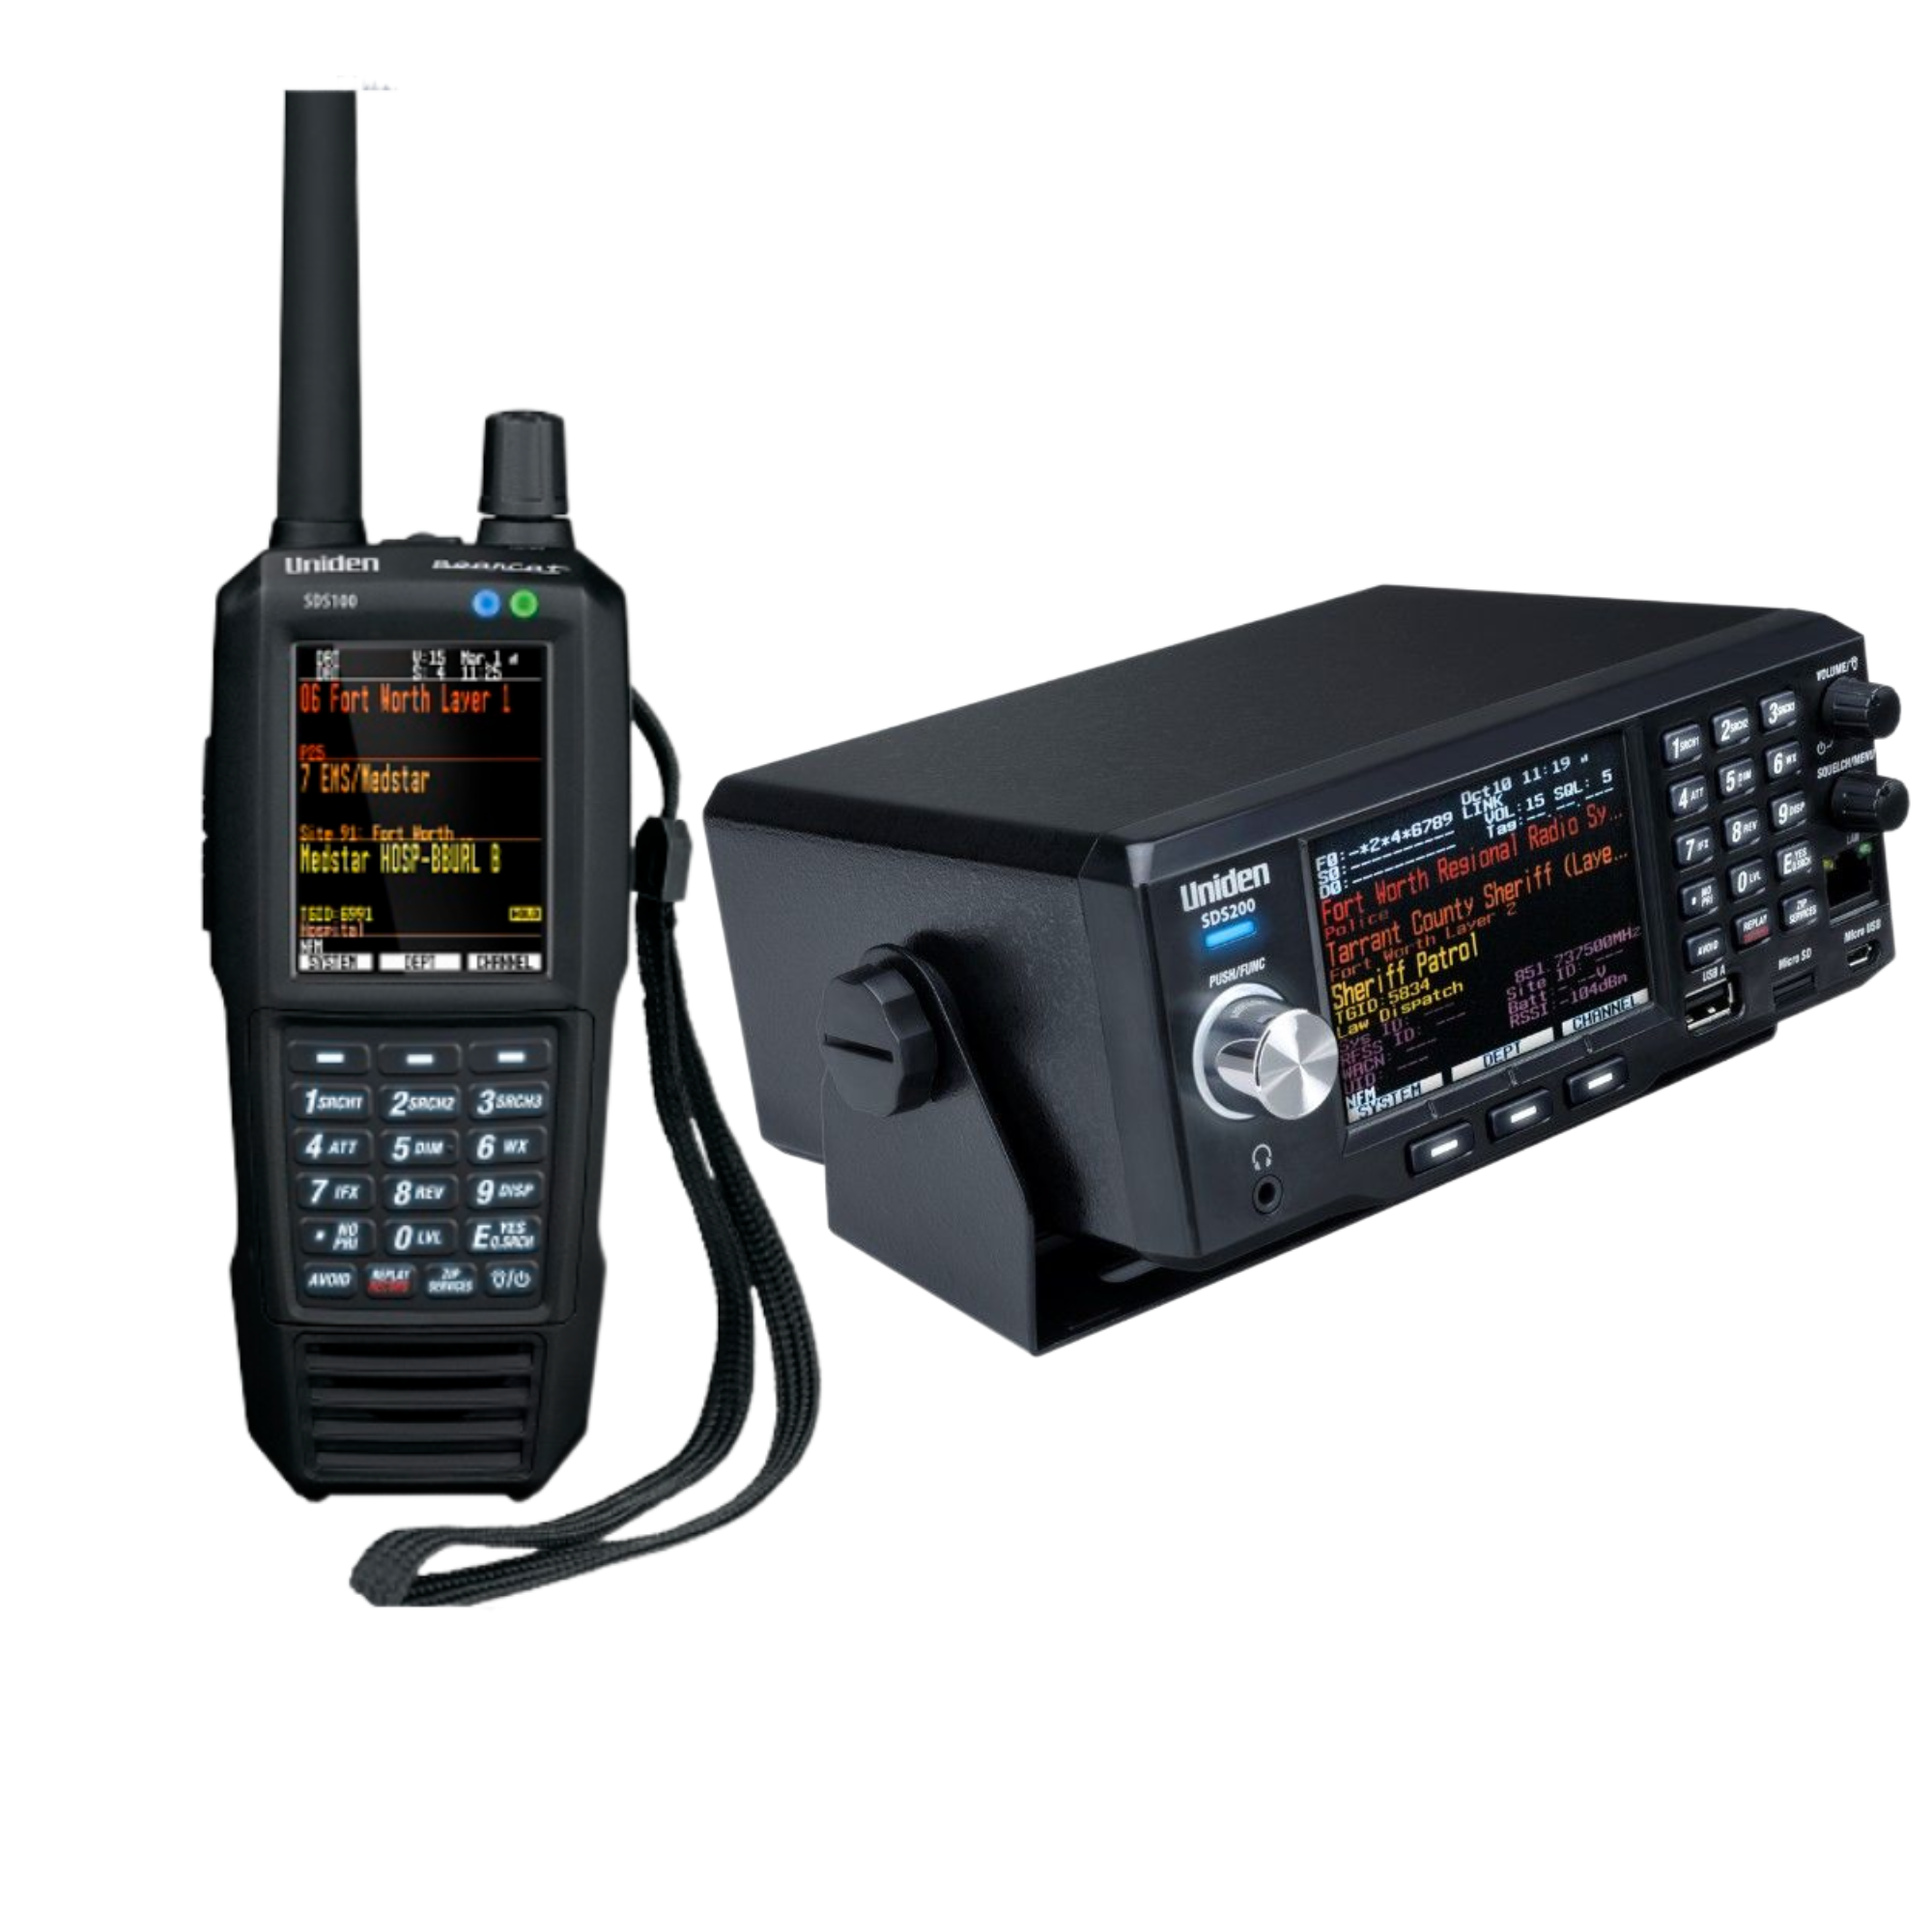 Uniden BCT15X Radio Scanner – Uniden America Corporation